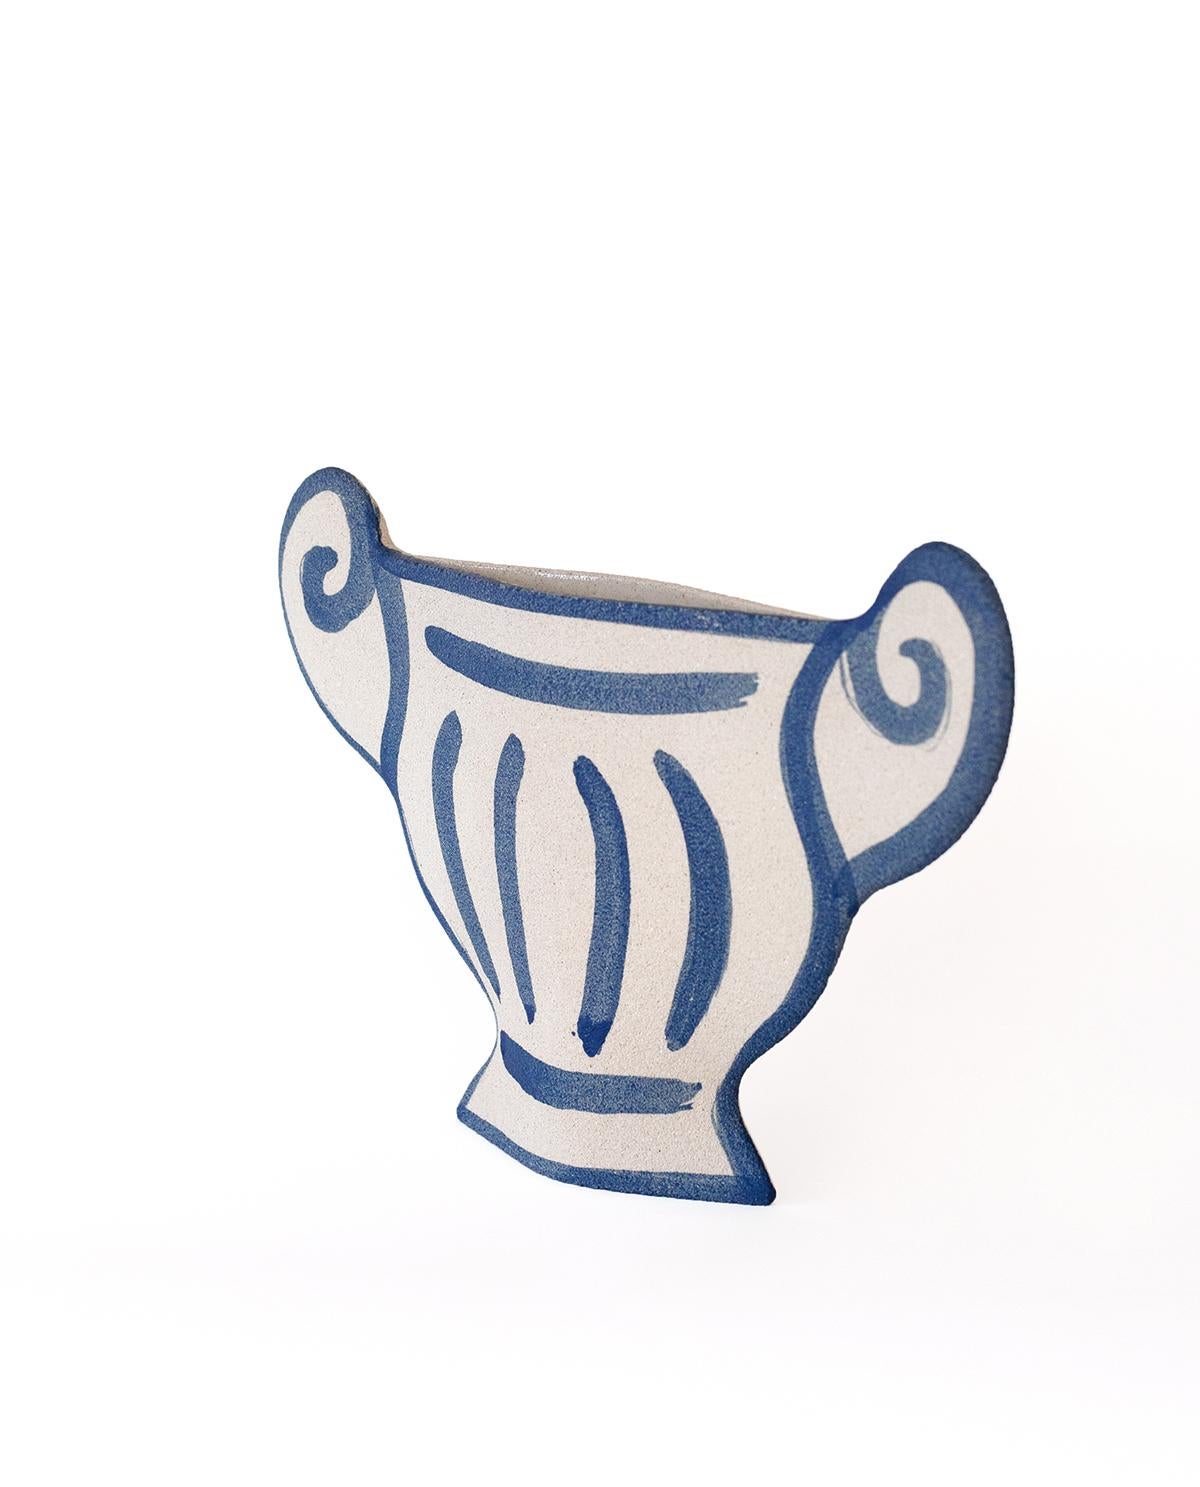 Faisant partie d'une nouvelle ligne captivante mêlant la poterie grecque ancienne au design contemporain, le vase 